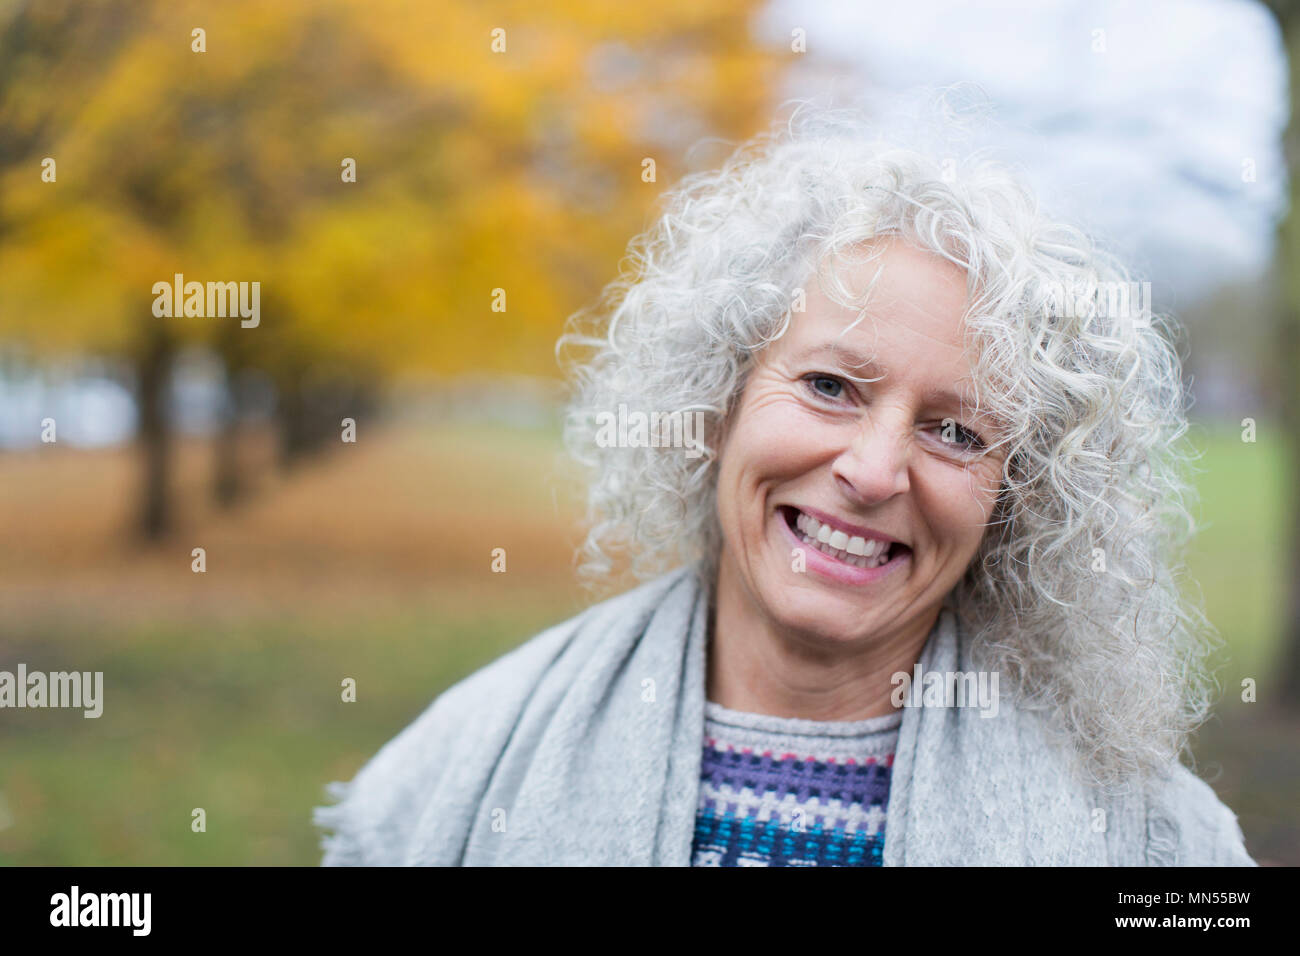 Portrait of smiling senior woman in autumn park Banque D'Images